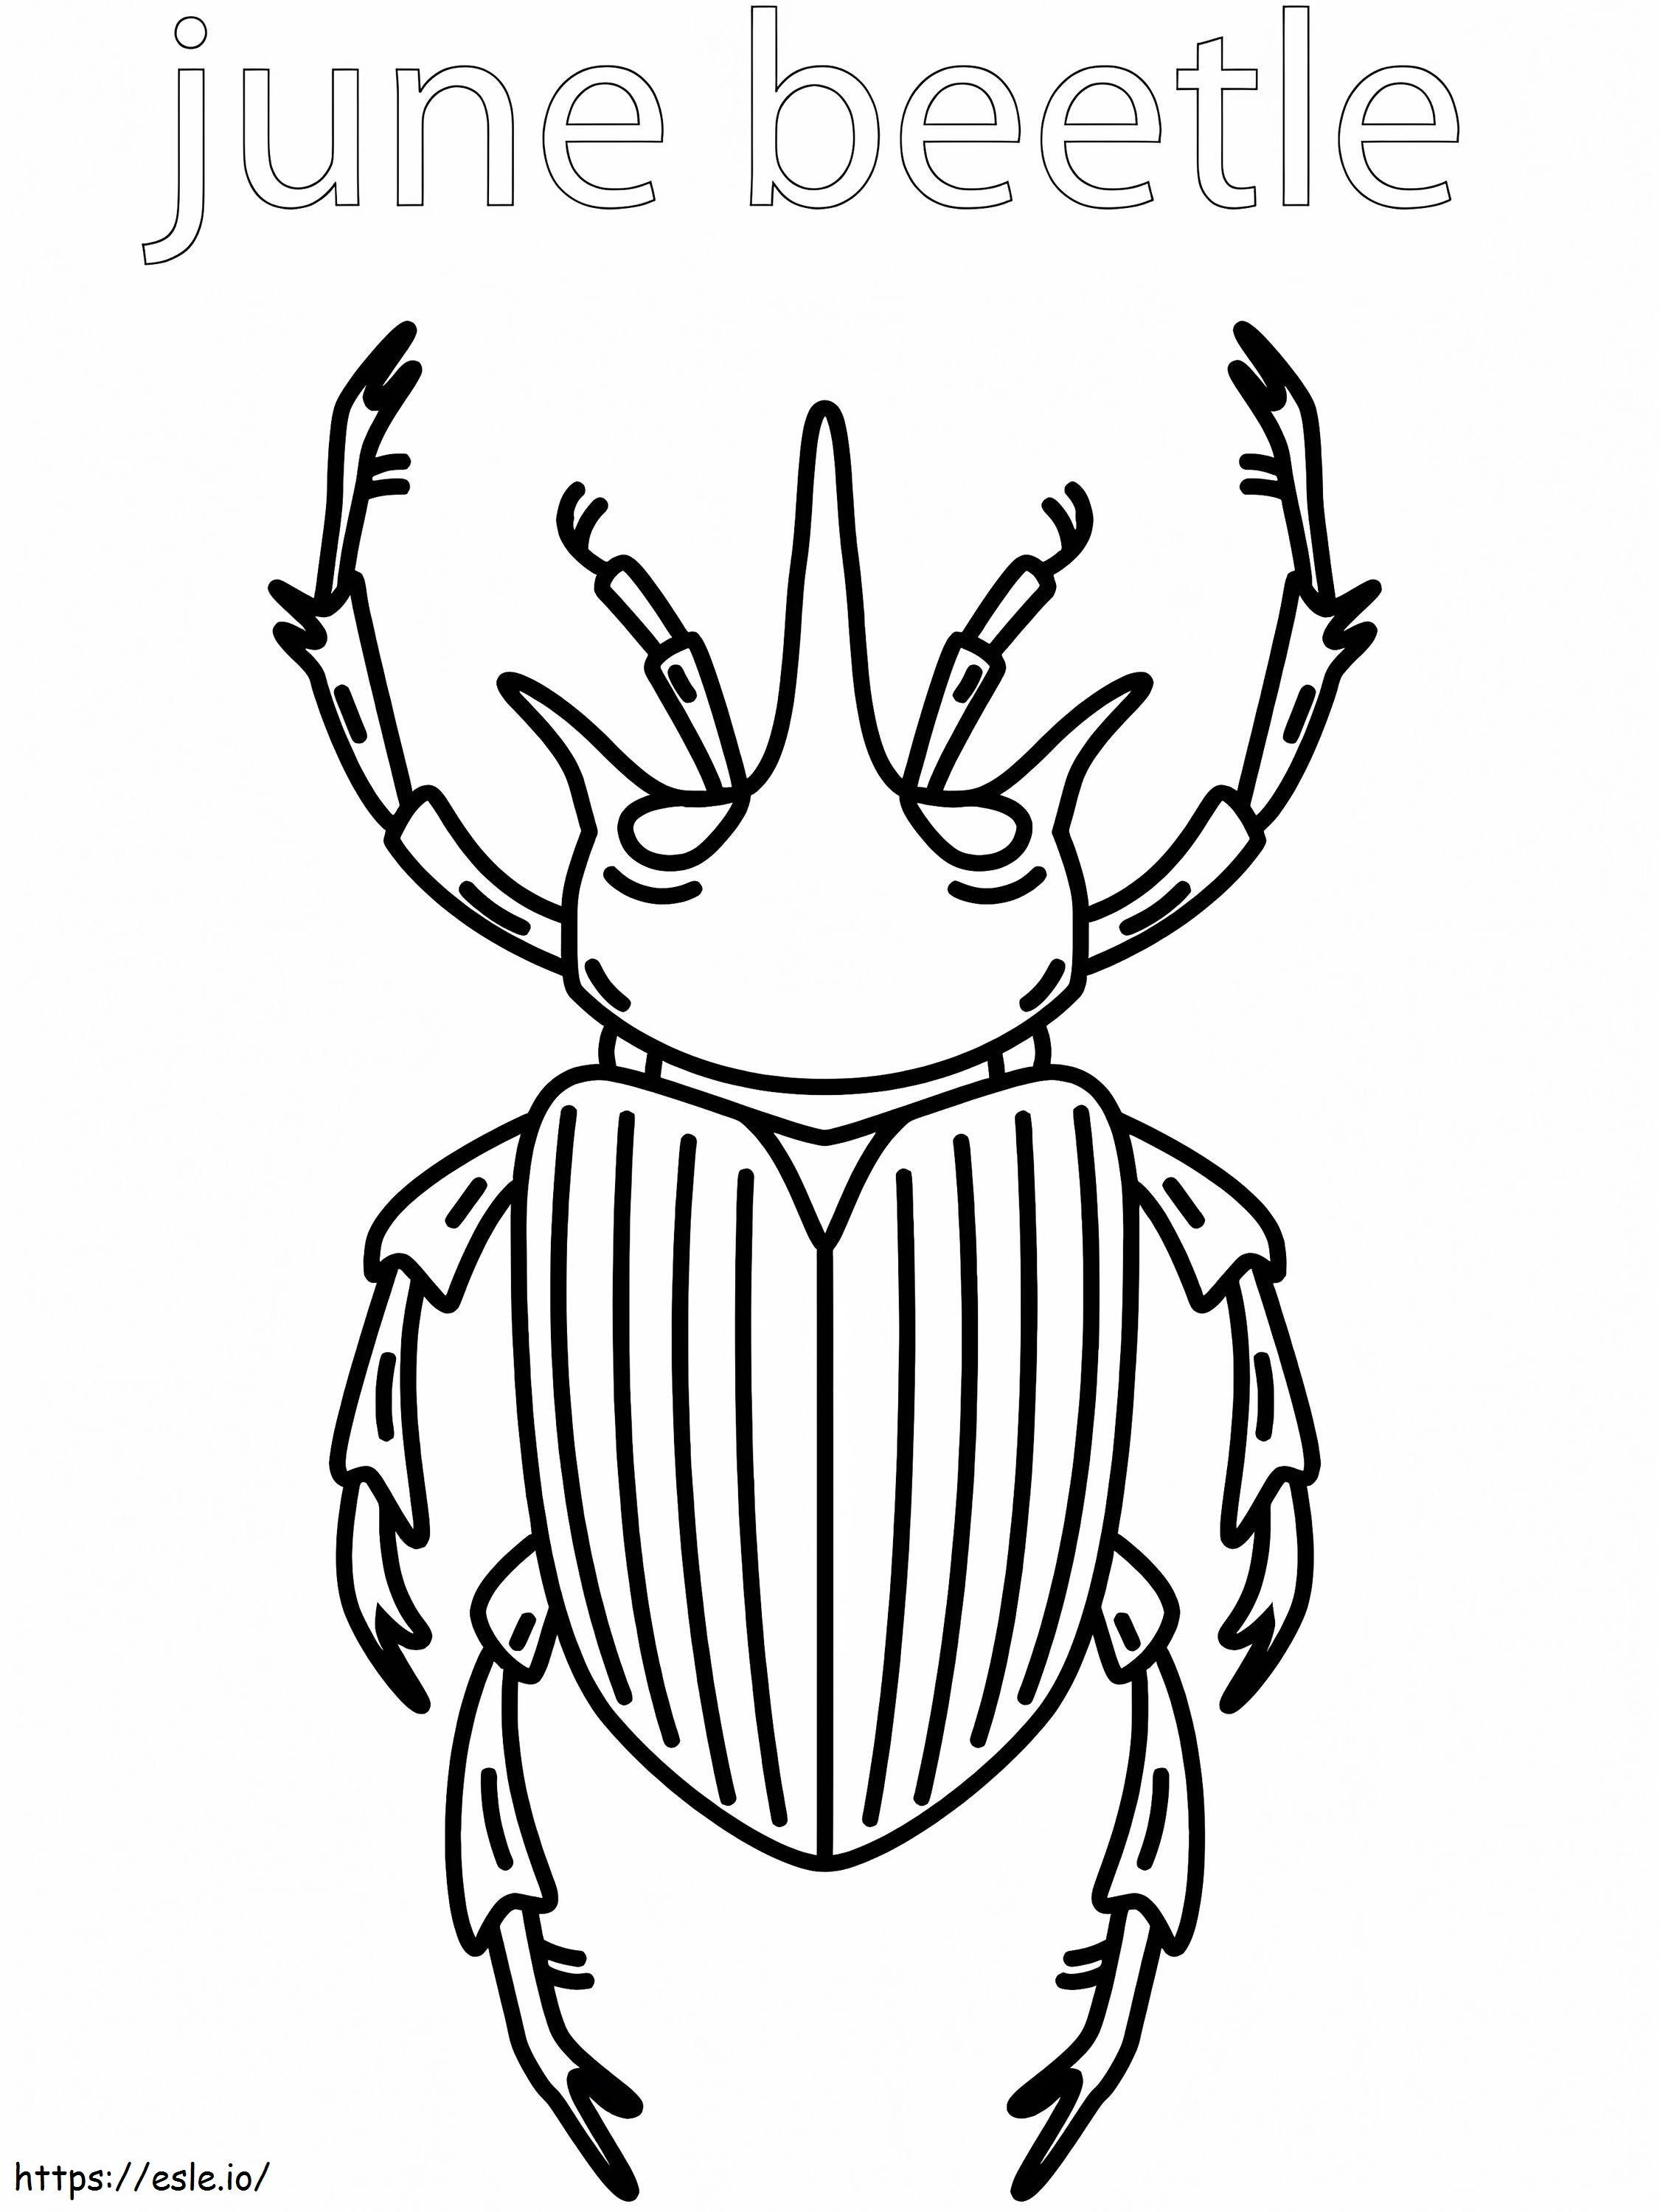 Escarabajo de junio para colorear